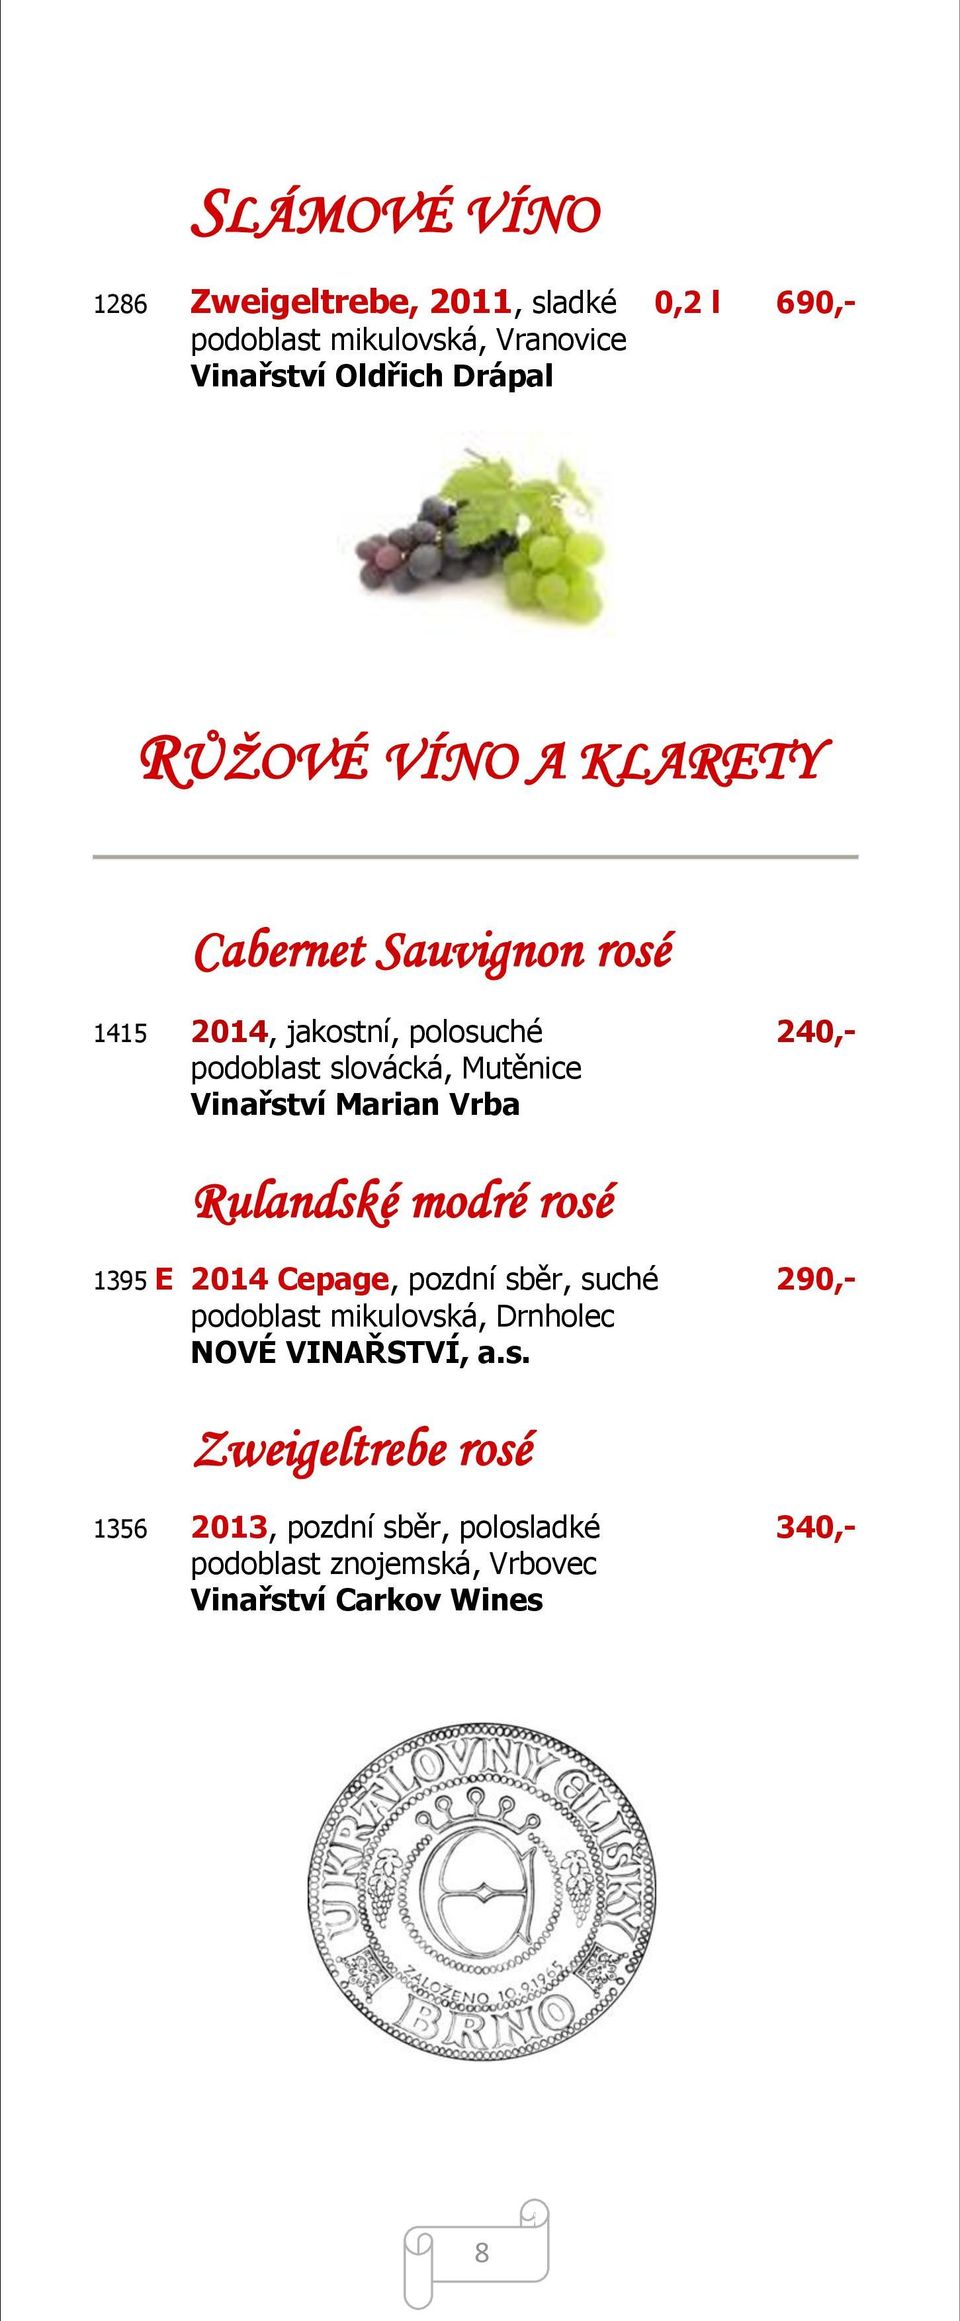 Vinařství Marian Vrba Rulandské modré rosé 1395 E 2014 Cepage, pozdní sběr, suché 290,- podoblast mikulovská, Drnholec